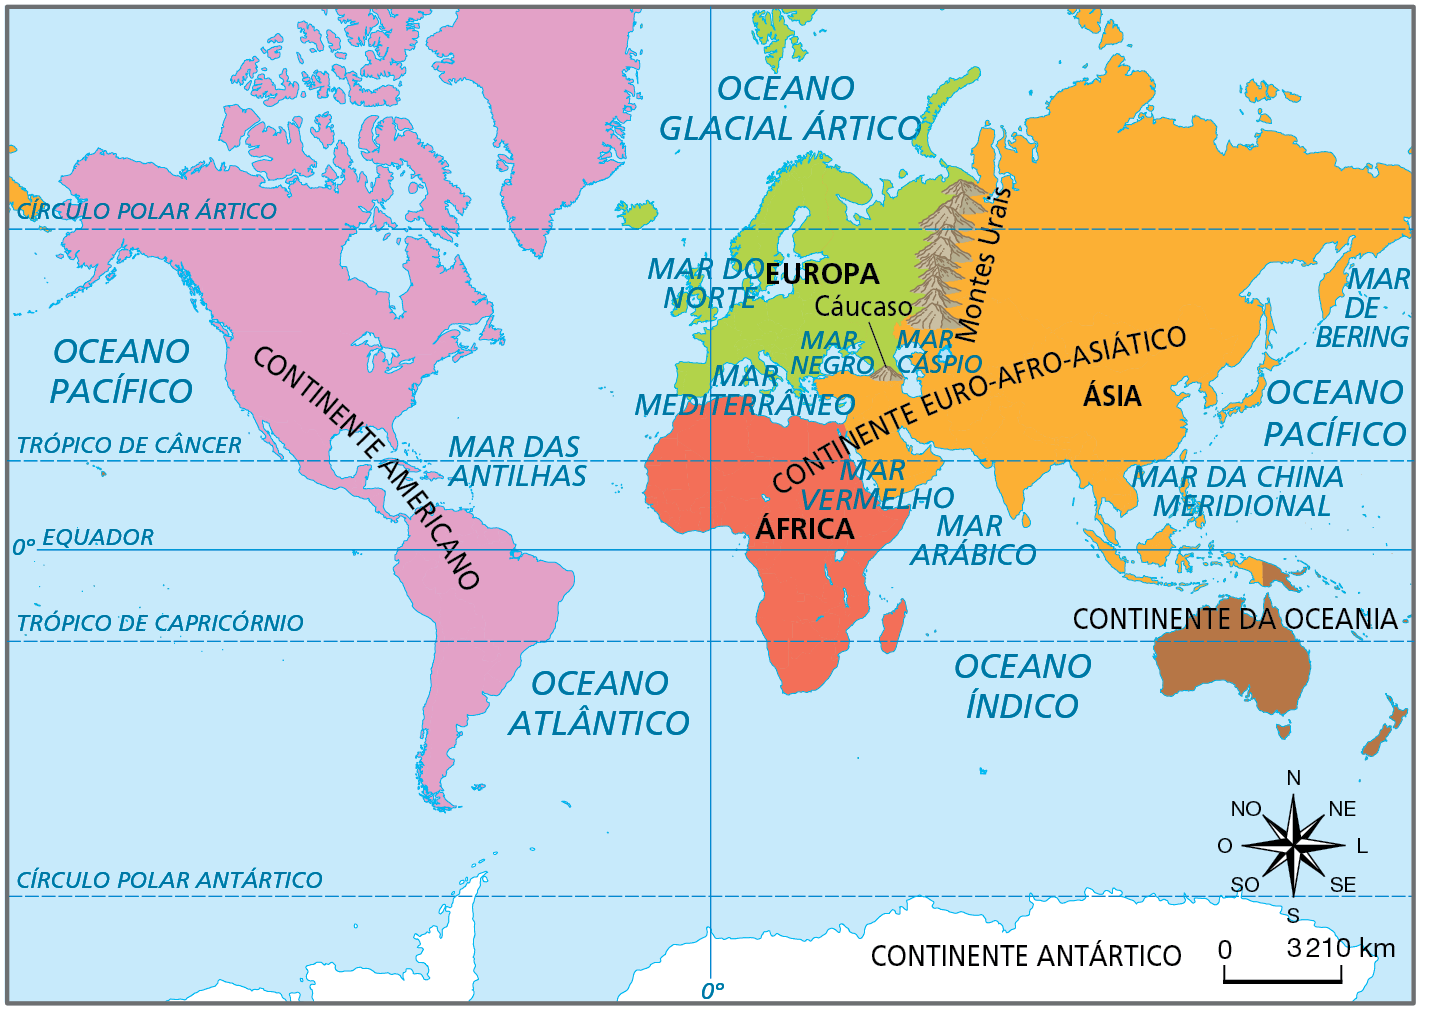 Mapa. Mundo: continentes, oceanos e alguns mares. Planisfério com a representação dos continentes, oceanos e mares da Terra.  Continente americano, na cor rosa: na costa oeste, banhado pelo Oceano Pacífico e na costa leste pelo Oceano Atlântico. Na porção central do continente americano, a leste, está o Mar das Antilhas.  Continente Euro Afro Asiático, formado por Europa, Ásia e África.  Europa, na cor verde: ao norte, é banhada pelo Oceano Glacial Ártico; a leste pelo Mar do Norte e pelo Oceano Atlântico; ao sul pelo Mar Mediterrâneo. A leste, faz fronteira com a Ásia no Mar Negro, no Monte Cáucaso, no Mar Cáspio e nos Montes Urais.  África, na cor vermelha: ao norte, banhada pelo Mar Mediterrâneo e pelo Mar Vermelho. A leste, pelo Mar Arábico e pelo Oceano Índico. A oeste, pelo Oceano Atlântico. Ásia, na cor laranja: faz fronteira com a Europa nos Montes Urais, no Mar Cáspio, no Monte Cáucaso e no Mar Negro e com a África pelo Mar Mediterrâneo e pelo Mar Vermelho. Ao norte, é banhada pelo Oceano Glacial Ártico; ao sul, é banhada pelo Mar Arábico, pelo Oceano Índico e pelo Mar da China Meridional e, a leste, pelo Oceano Pacífico e o Mar de Bering.  Oceania, na cor marrom: localizada a sudeste da Ásia, é banhada na costa oeste pelo Oceano Índico e na costa leste pelo Oceano Pacífico.  Continente Antártico, na cor branca: localizado na porção sul do planisfério, é banhado pelos Oceanos Atlântico, Índico e Pacífico.   Ao lado, rosa dos ventos com o norte orientado para cima e escala de 0 a 3.210 quilômetros.